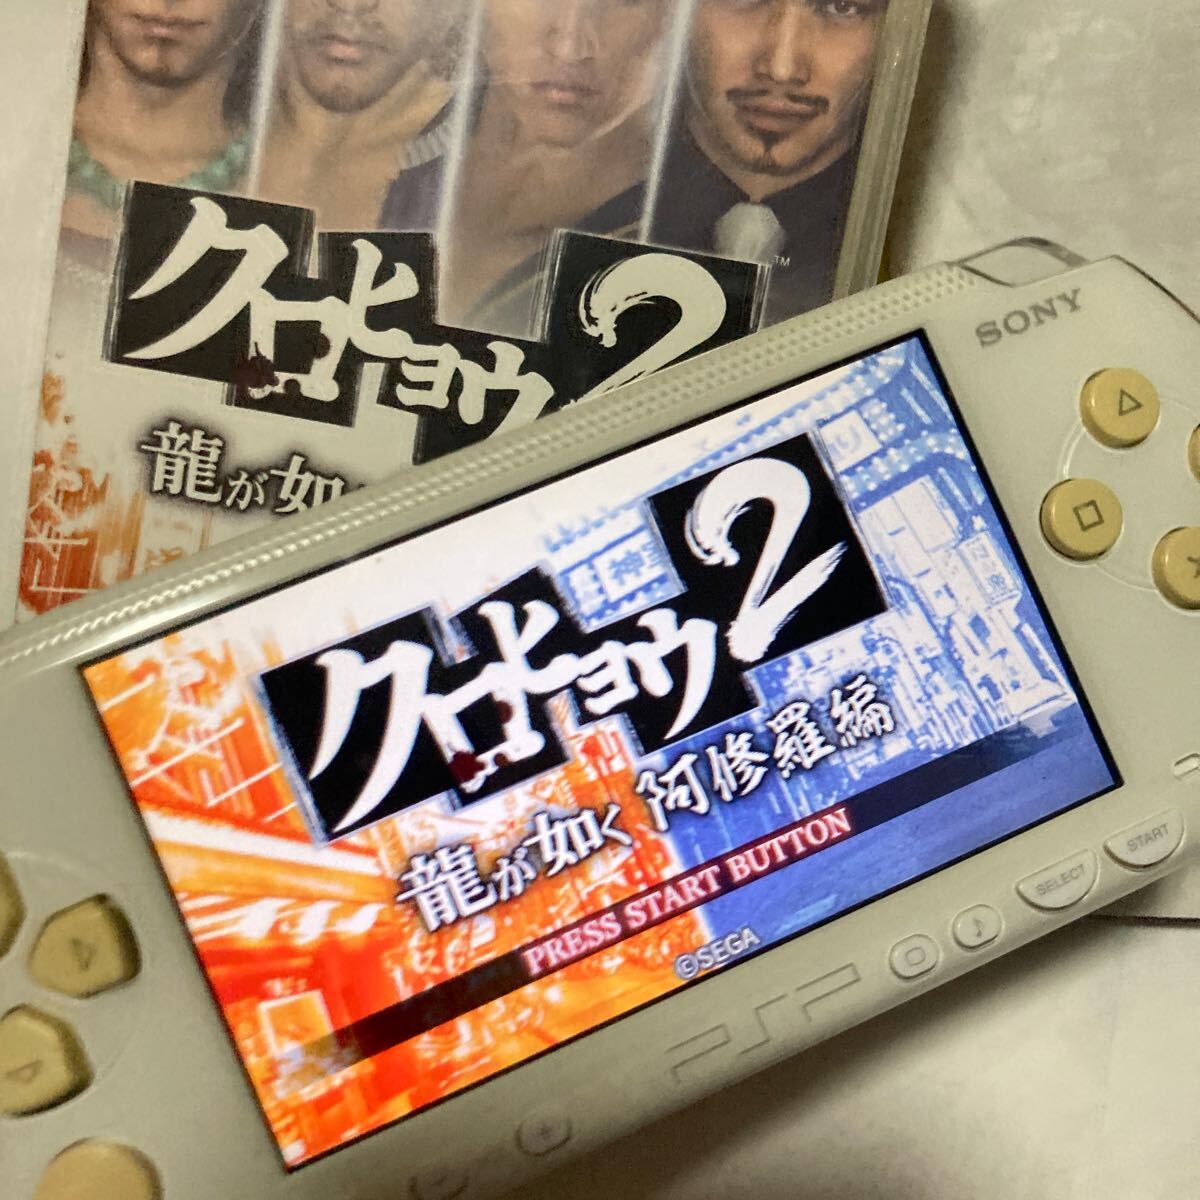 送料無料 PSP クロヒョウ2 龍が如く 阿修羅編 PlayStation Portable プレイステーションポータブル PSPソフト